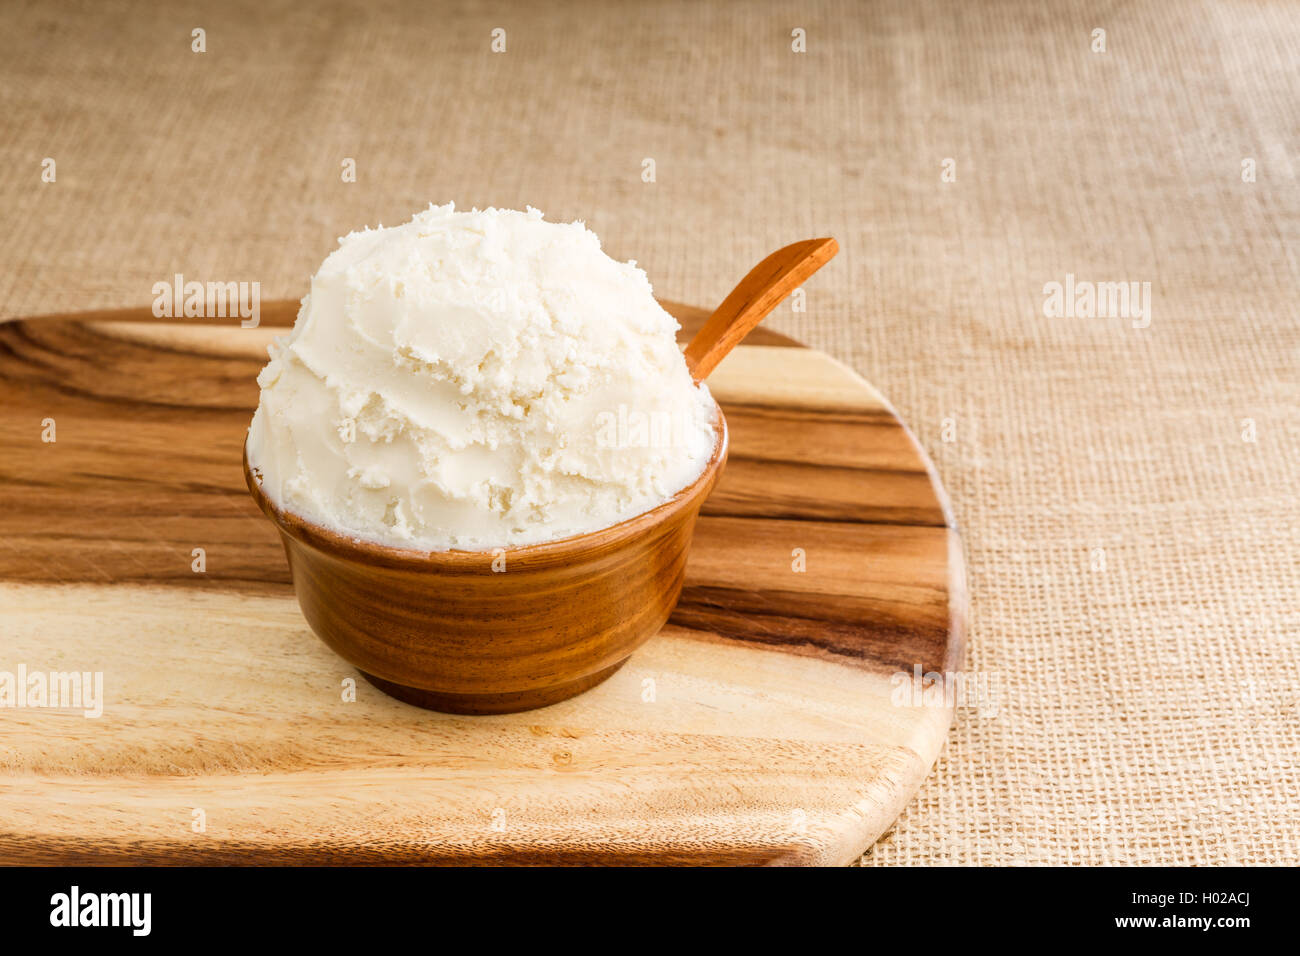 Beurre de karité bio non raffinée, dans le bol en bois avec la cuillère, se tient sur la planche de bois, tissu jute d'arrière-plan. Banque D'Images